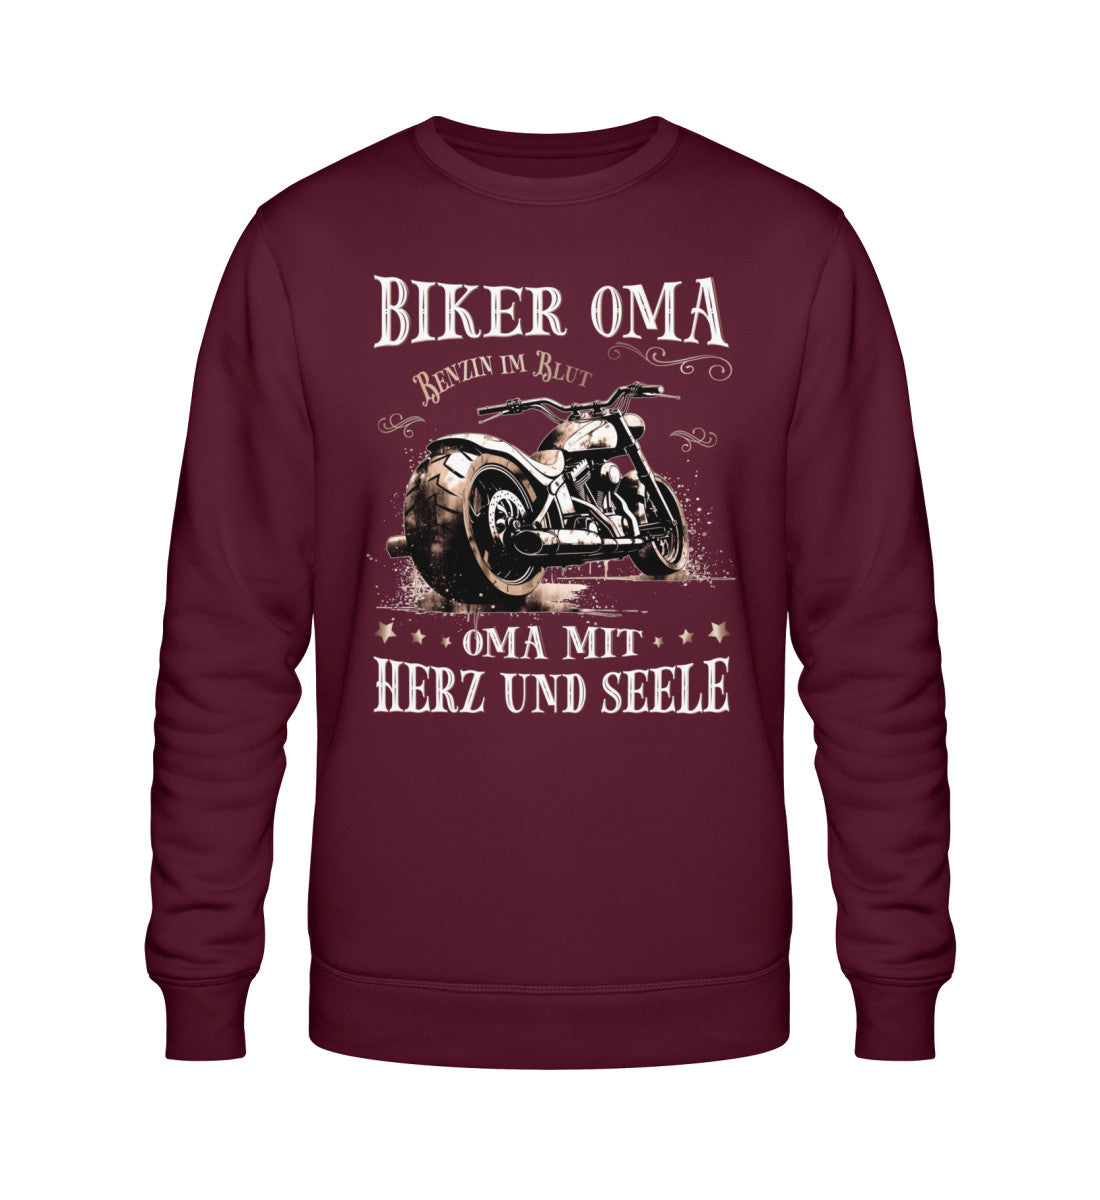 Ein Sweatshirt für Motorradfahrerinnen von Wingbikers mit dem Aufdruck, Biker Oma - Benzin im Blut - Oma mit Herz und Seele, in burgunder weinrot.